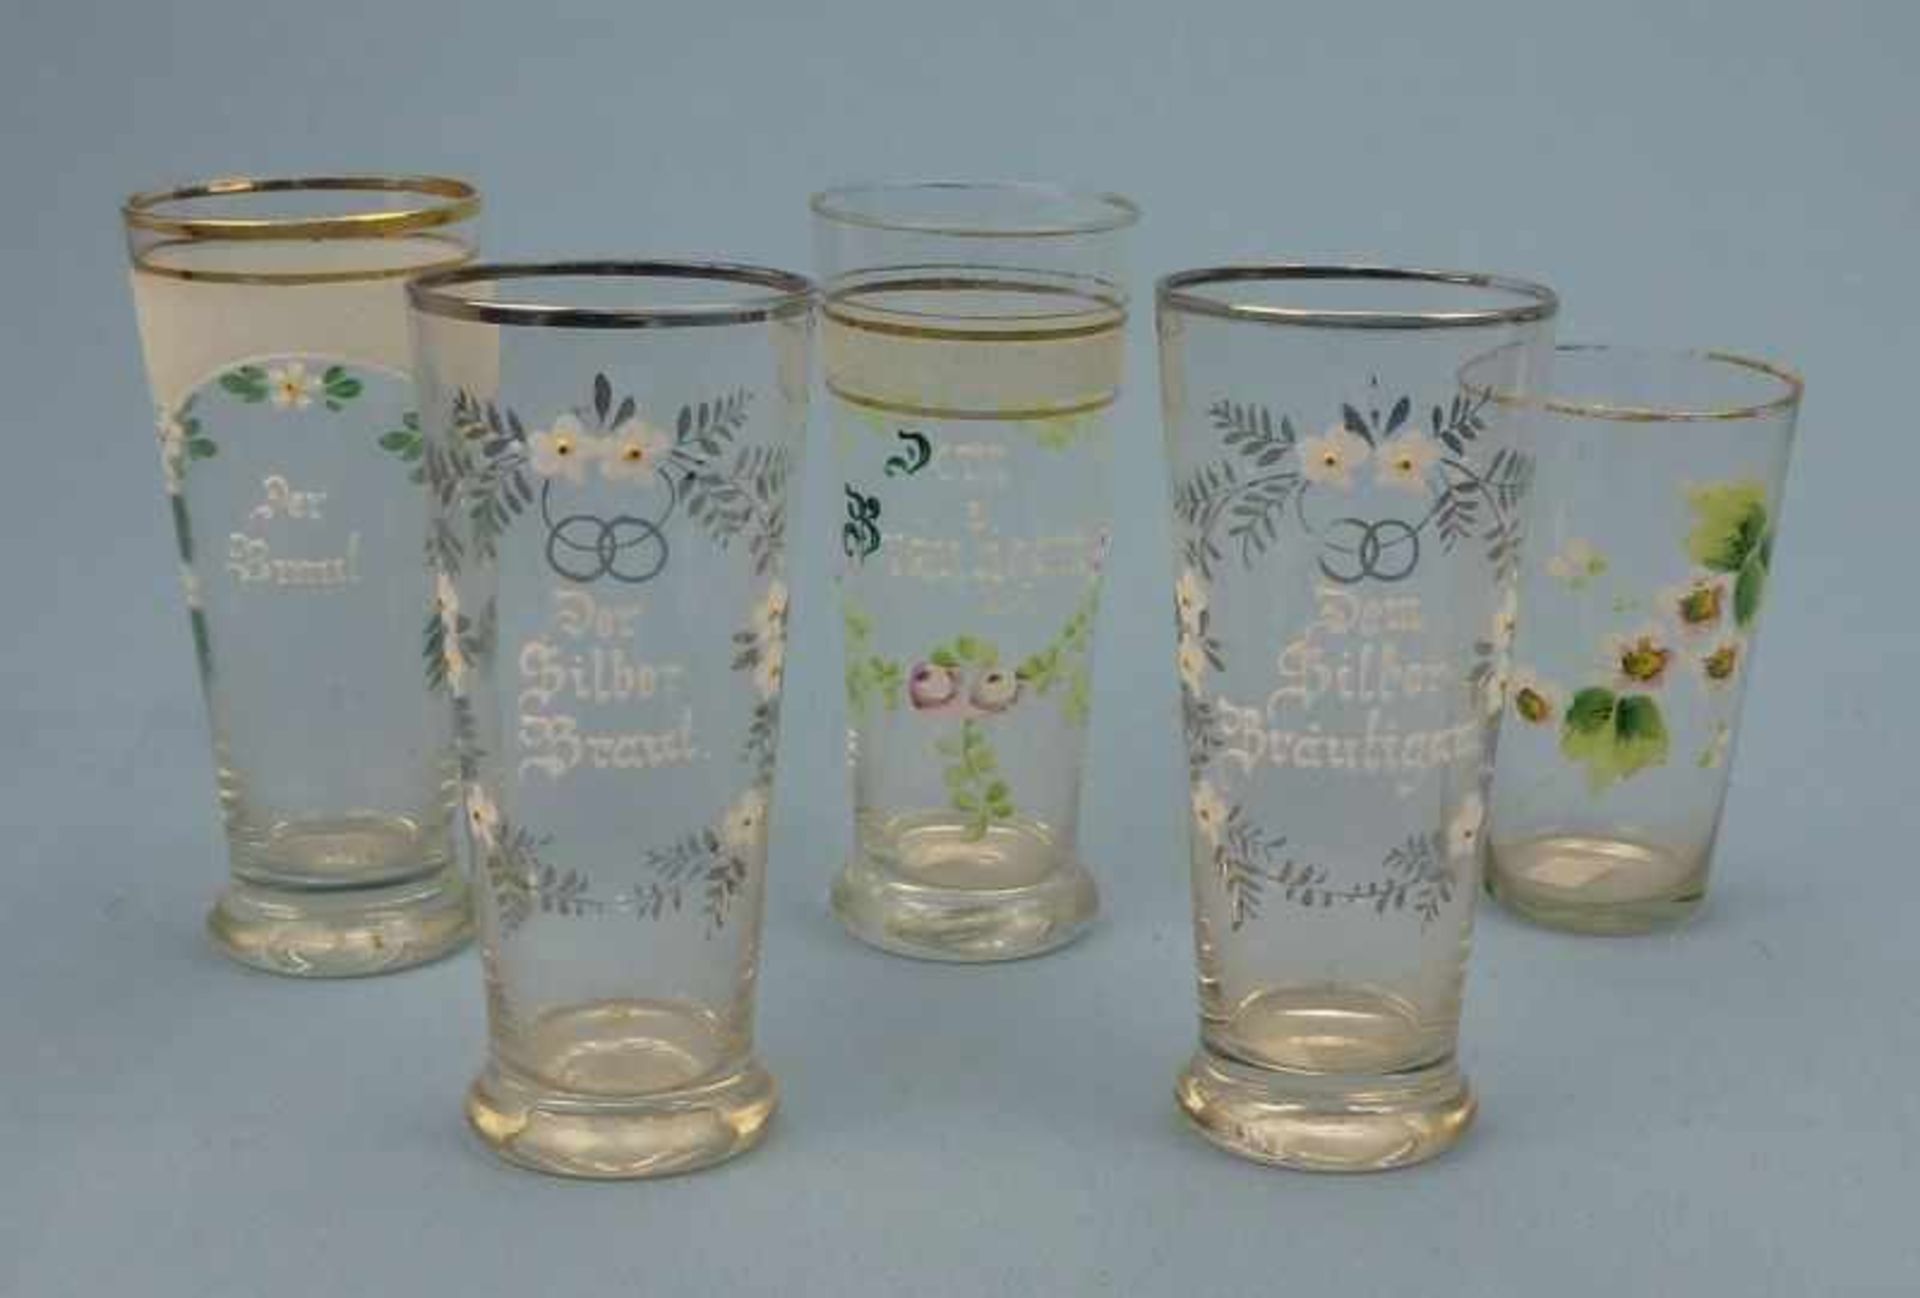 4 Braut-/Bräutigam-Gläser, um 1900 konisch, emaileegemalte Bezeichnungen in Kartuschen,beil. Glas, H